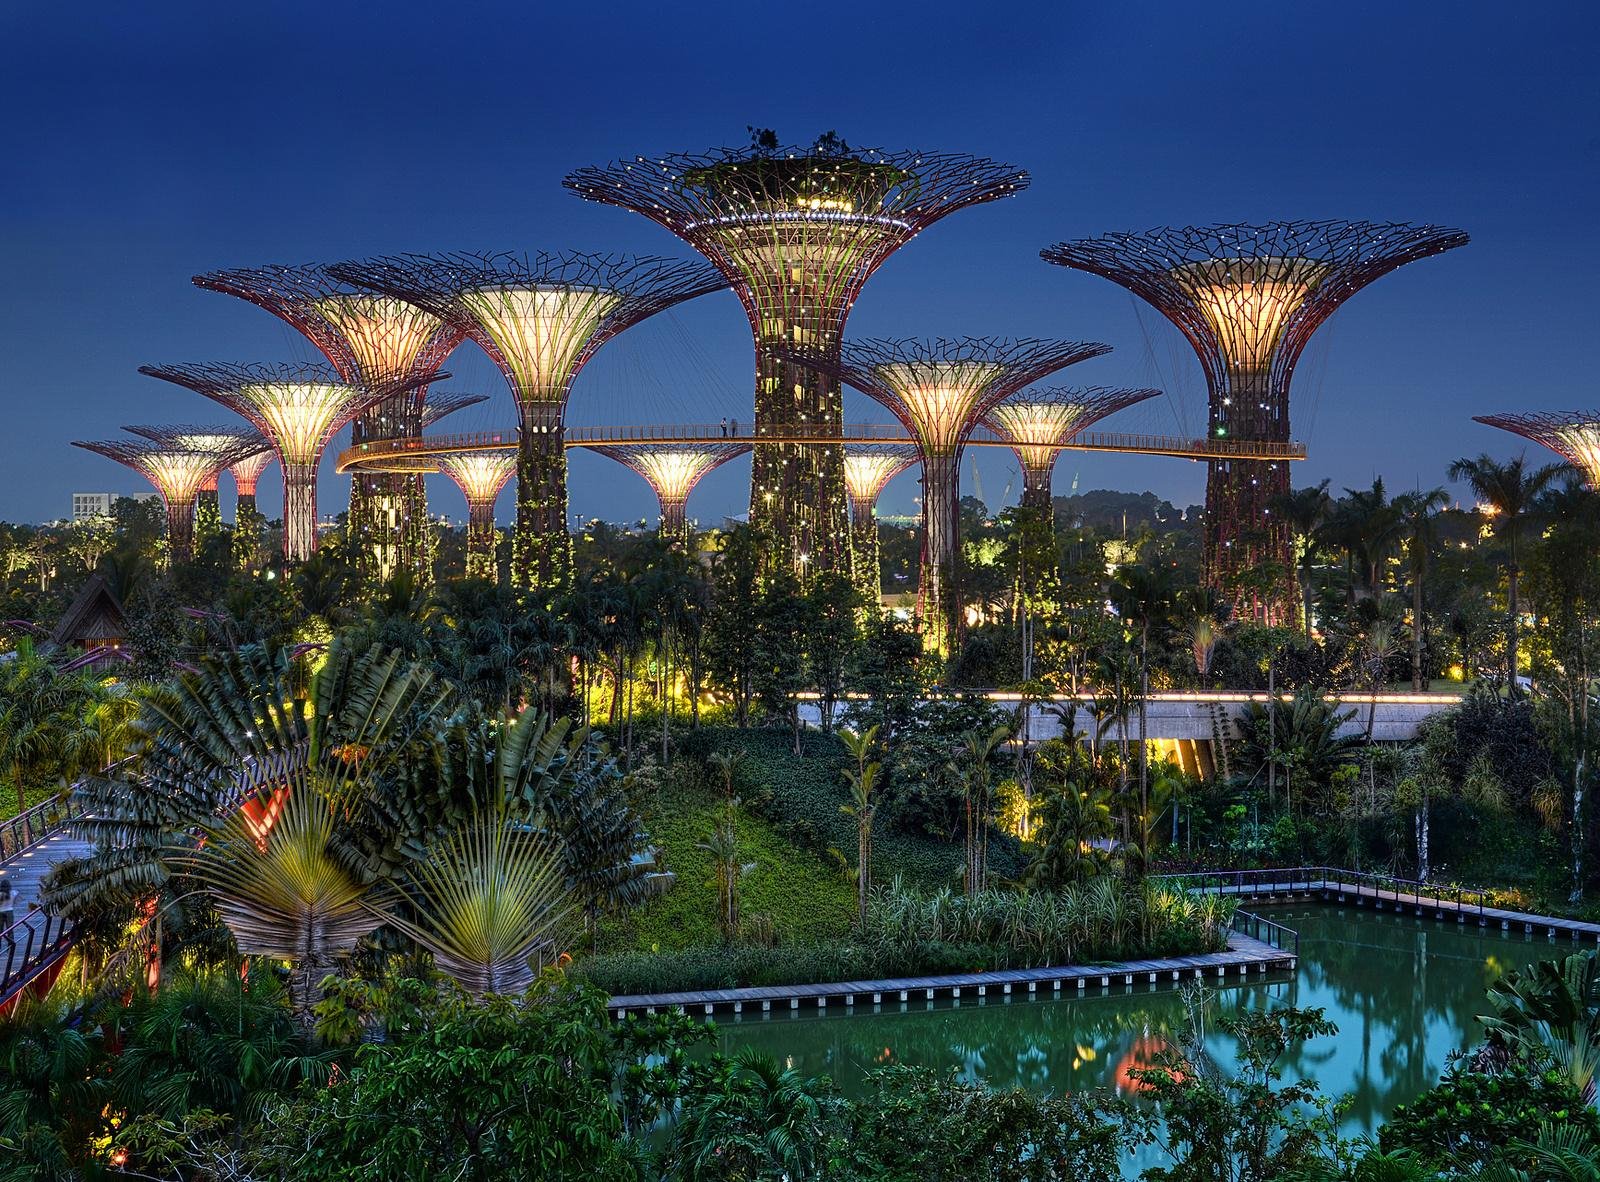 سنغافورة   سنغافوره   أماكن سياحية   سياحة   وجهات   سفر   رحلات طيران